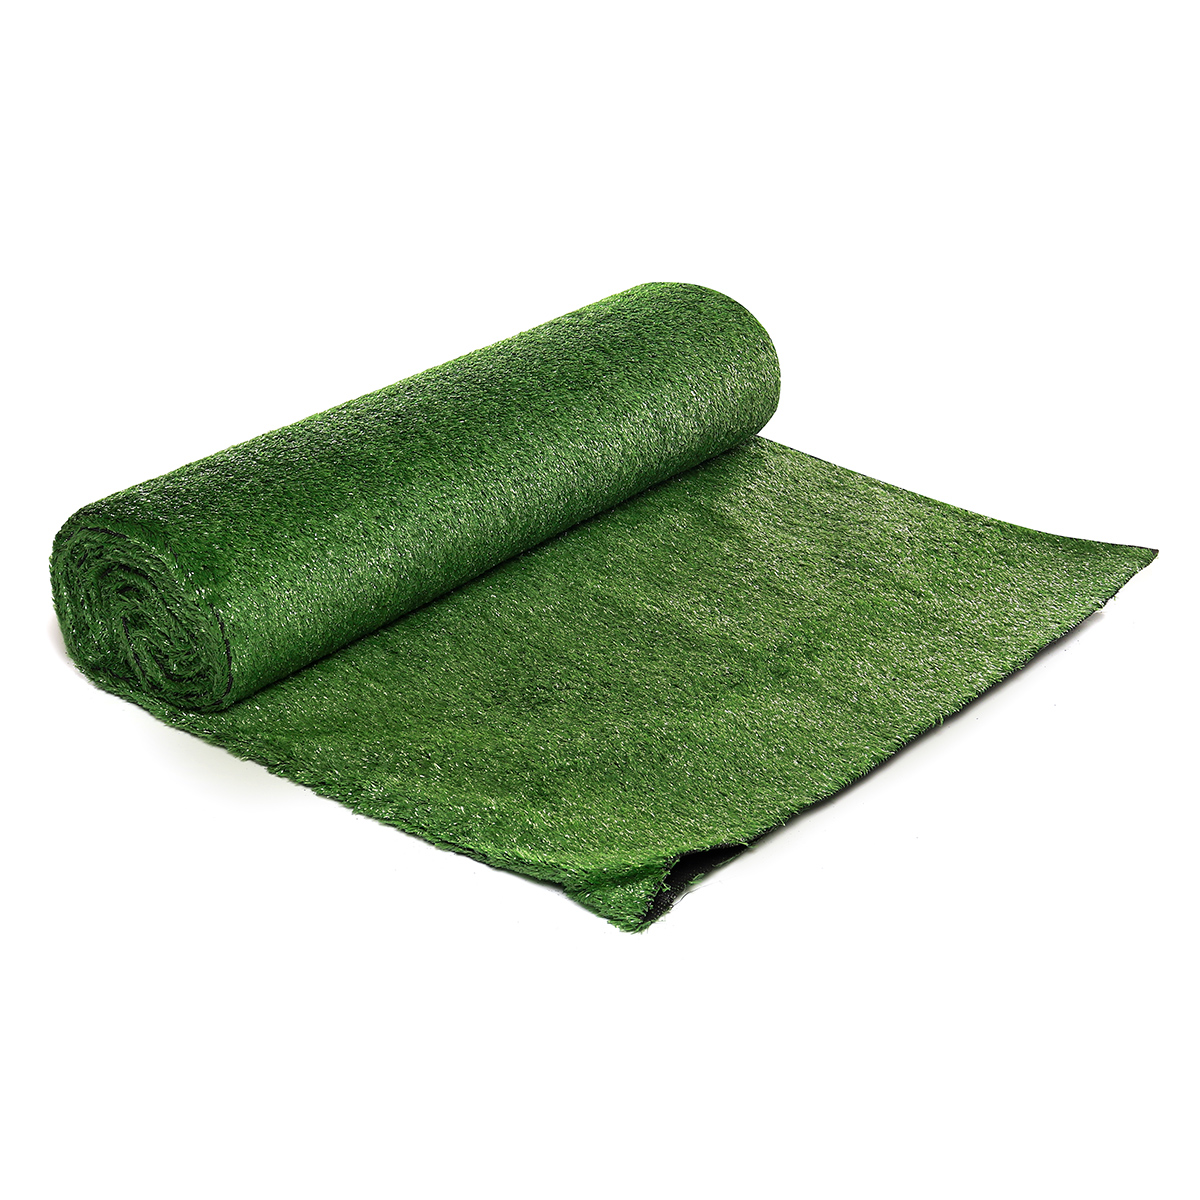 15mm-Artificial-Grass-Mat-Lawn-Synthetic-Green-Yard-Garden-InOutdoor-1715021-5